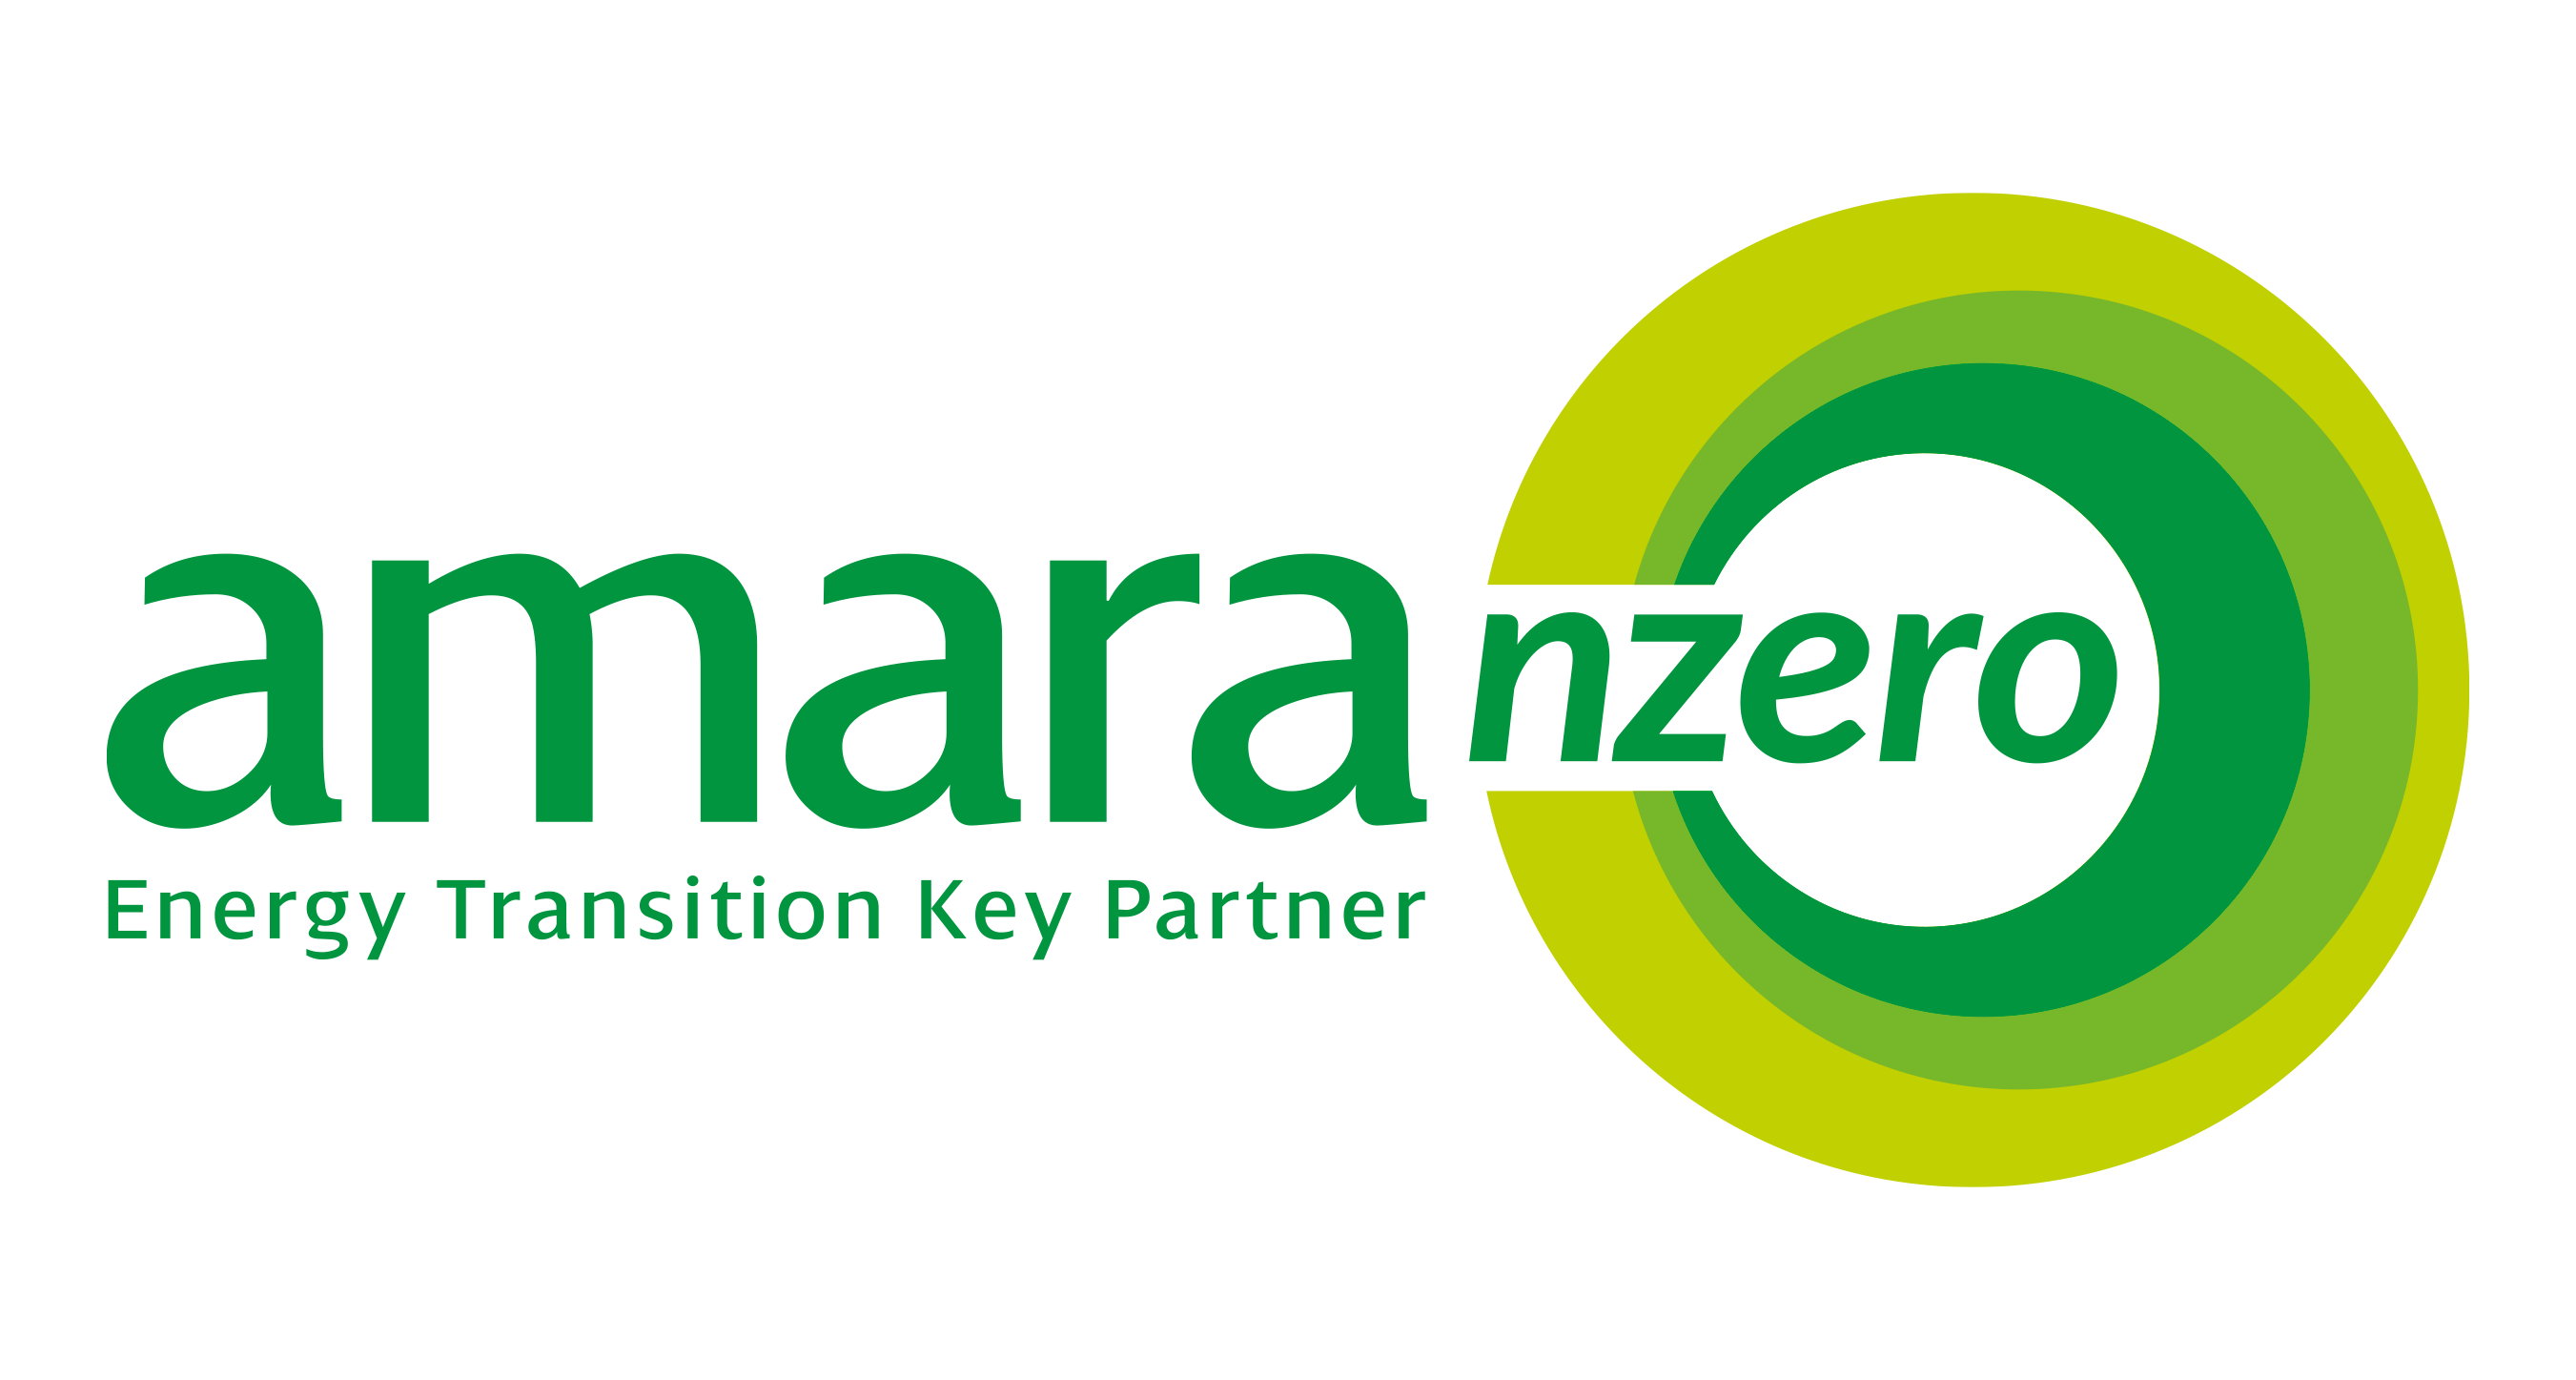 Amara NZero logo